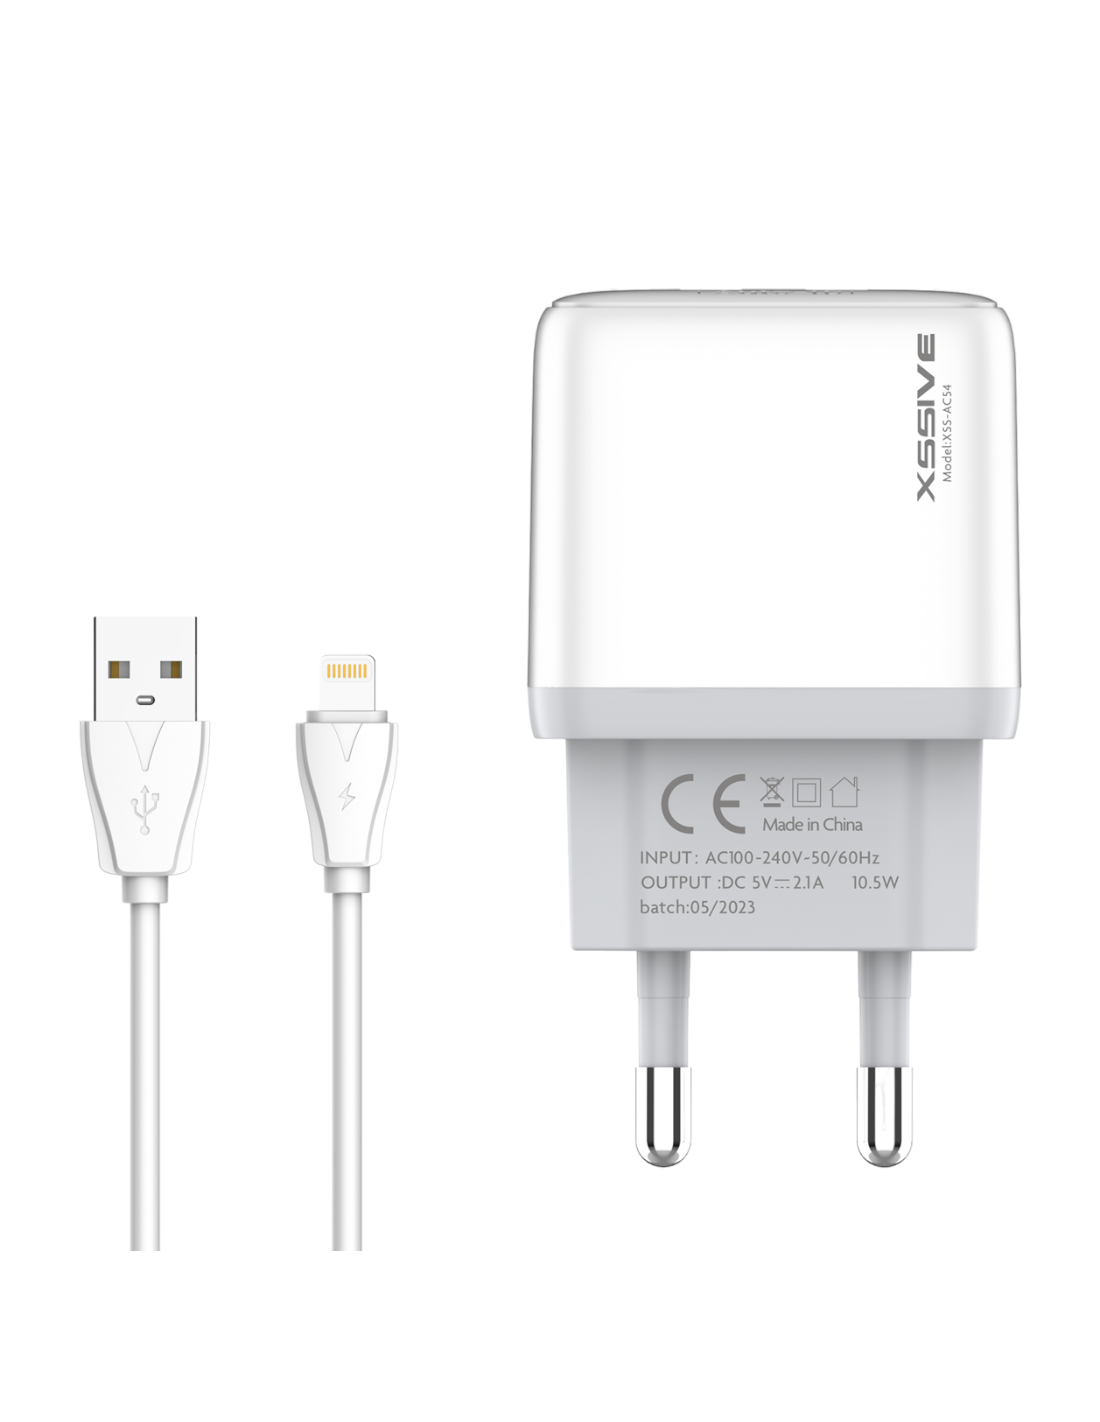 Cable connection rapide - Chargeur USB 5v 2A en sortie, permet de